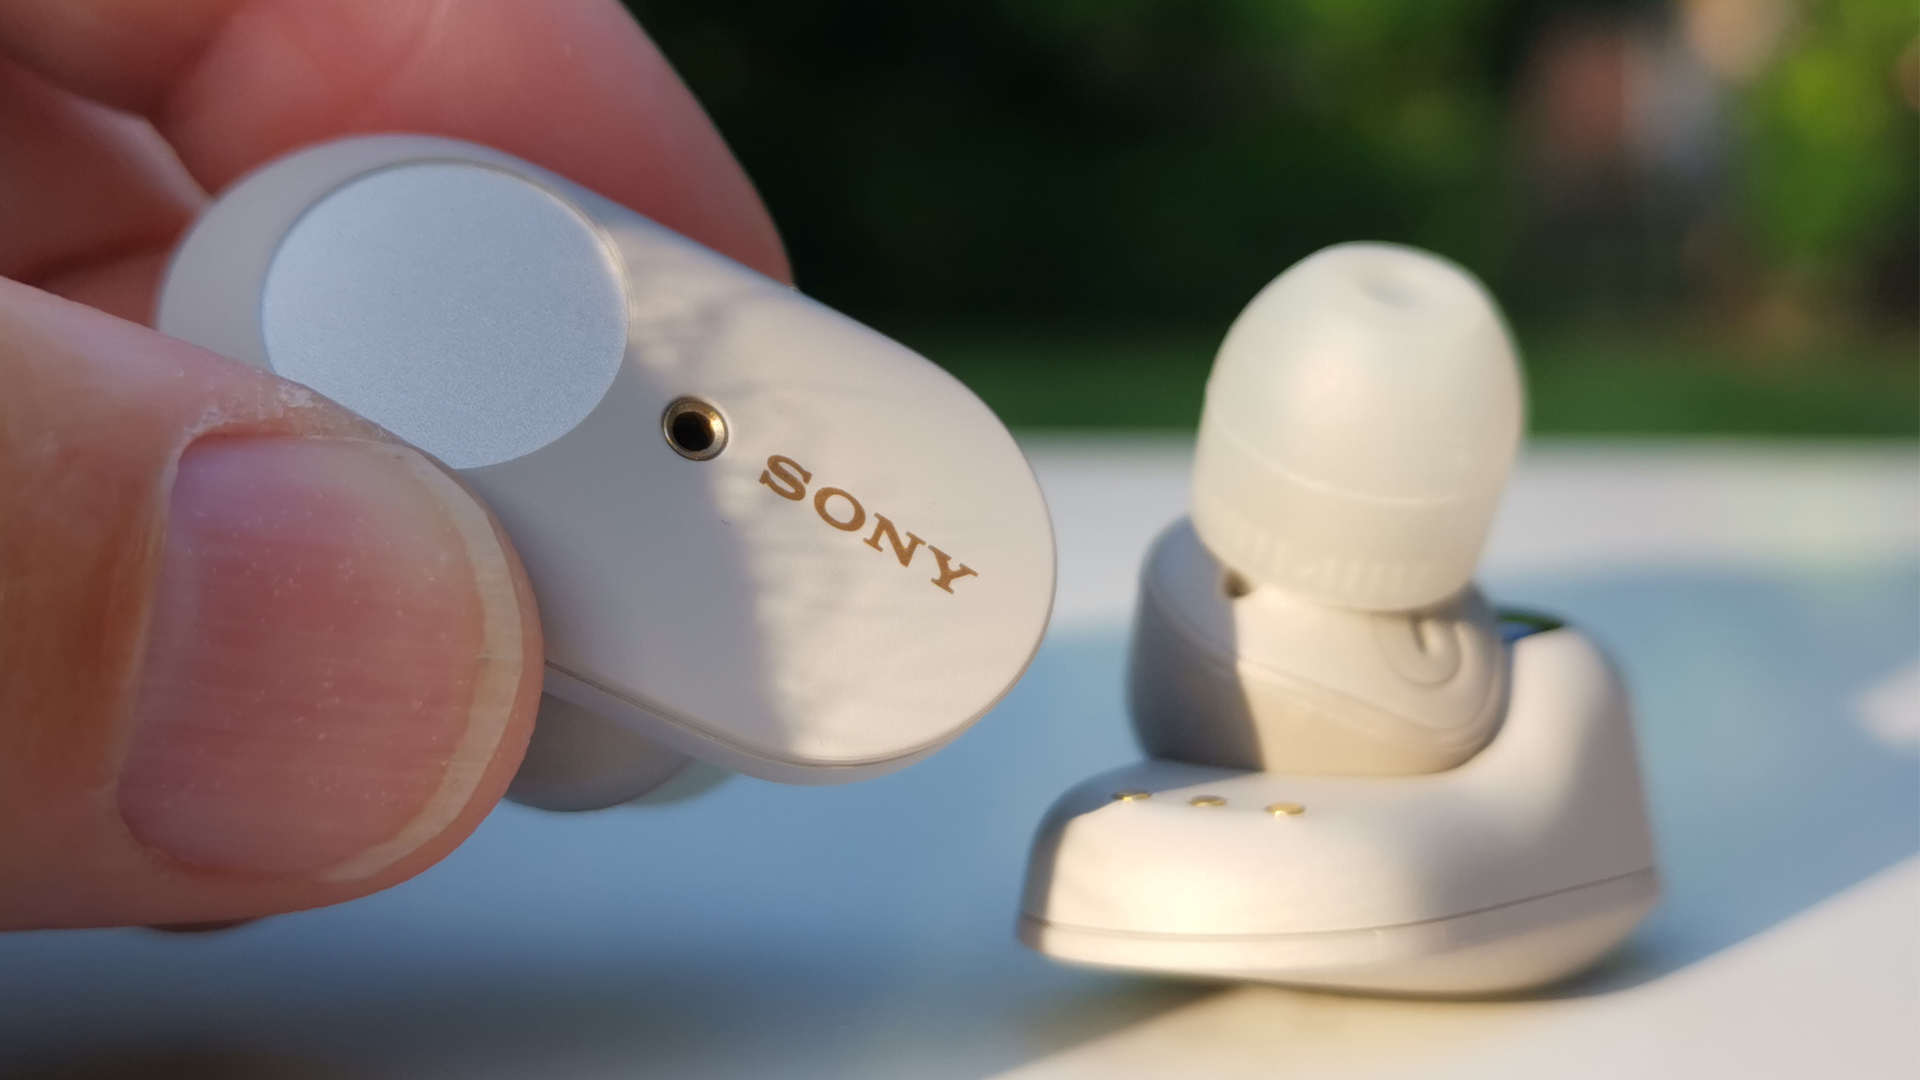 Sony WF-1000XM3 Wireless Earbuds review | TechRadar